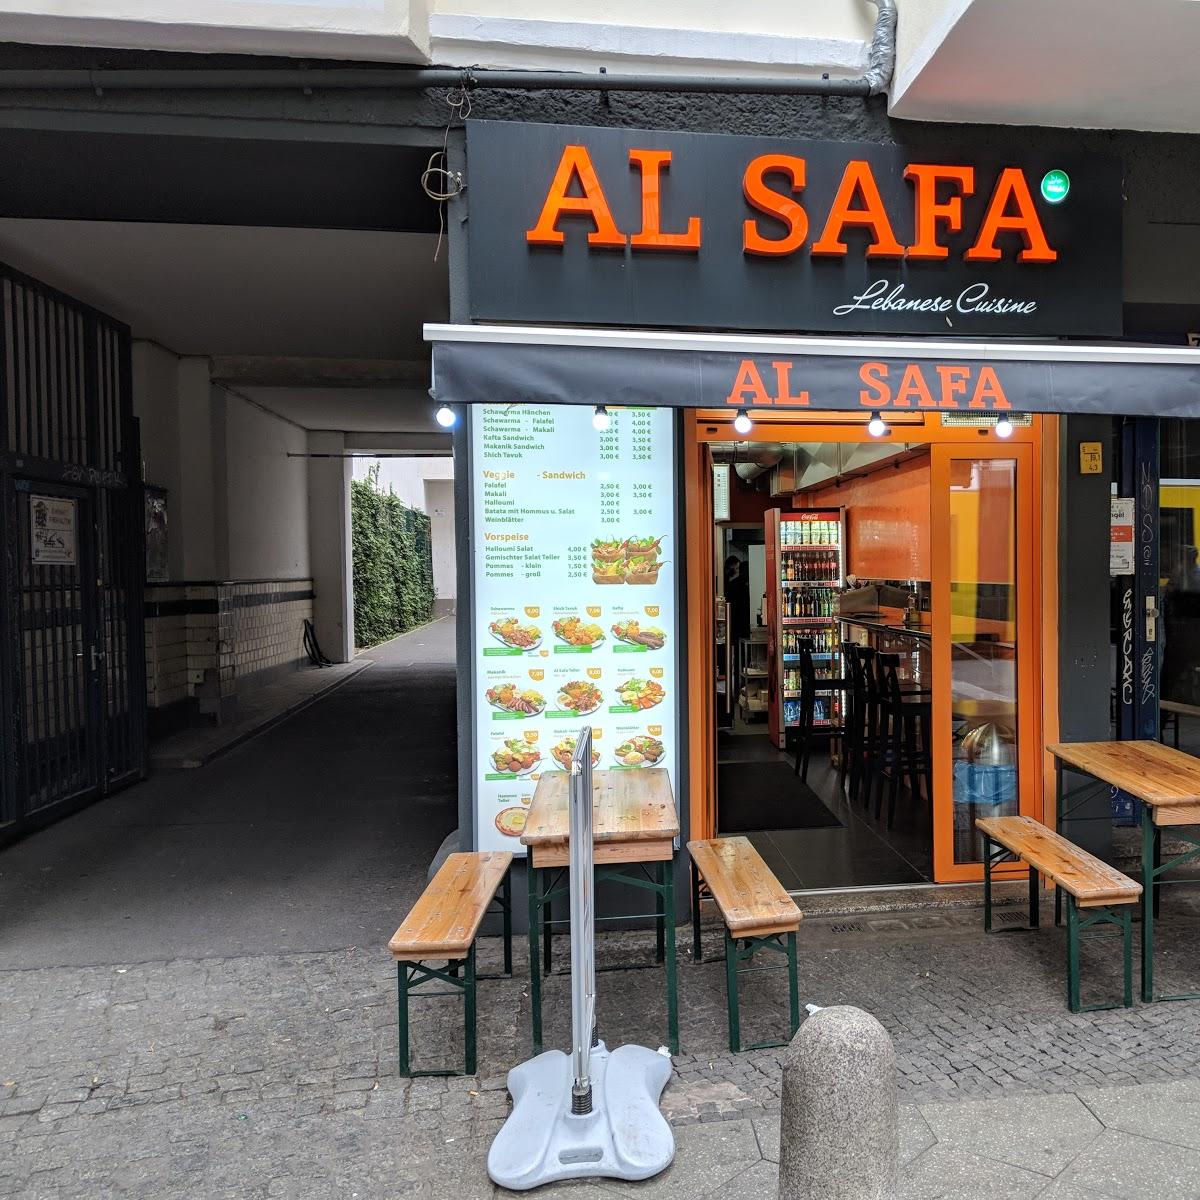 Restaurant "Al Safa" in Berlin